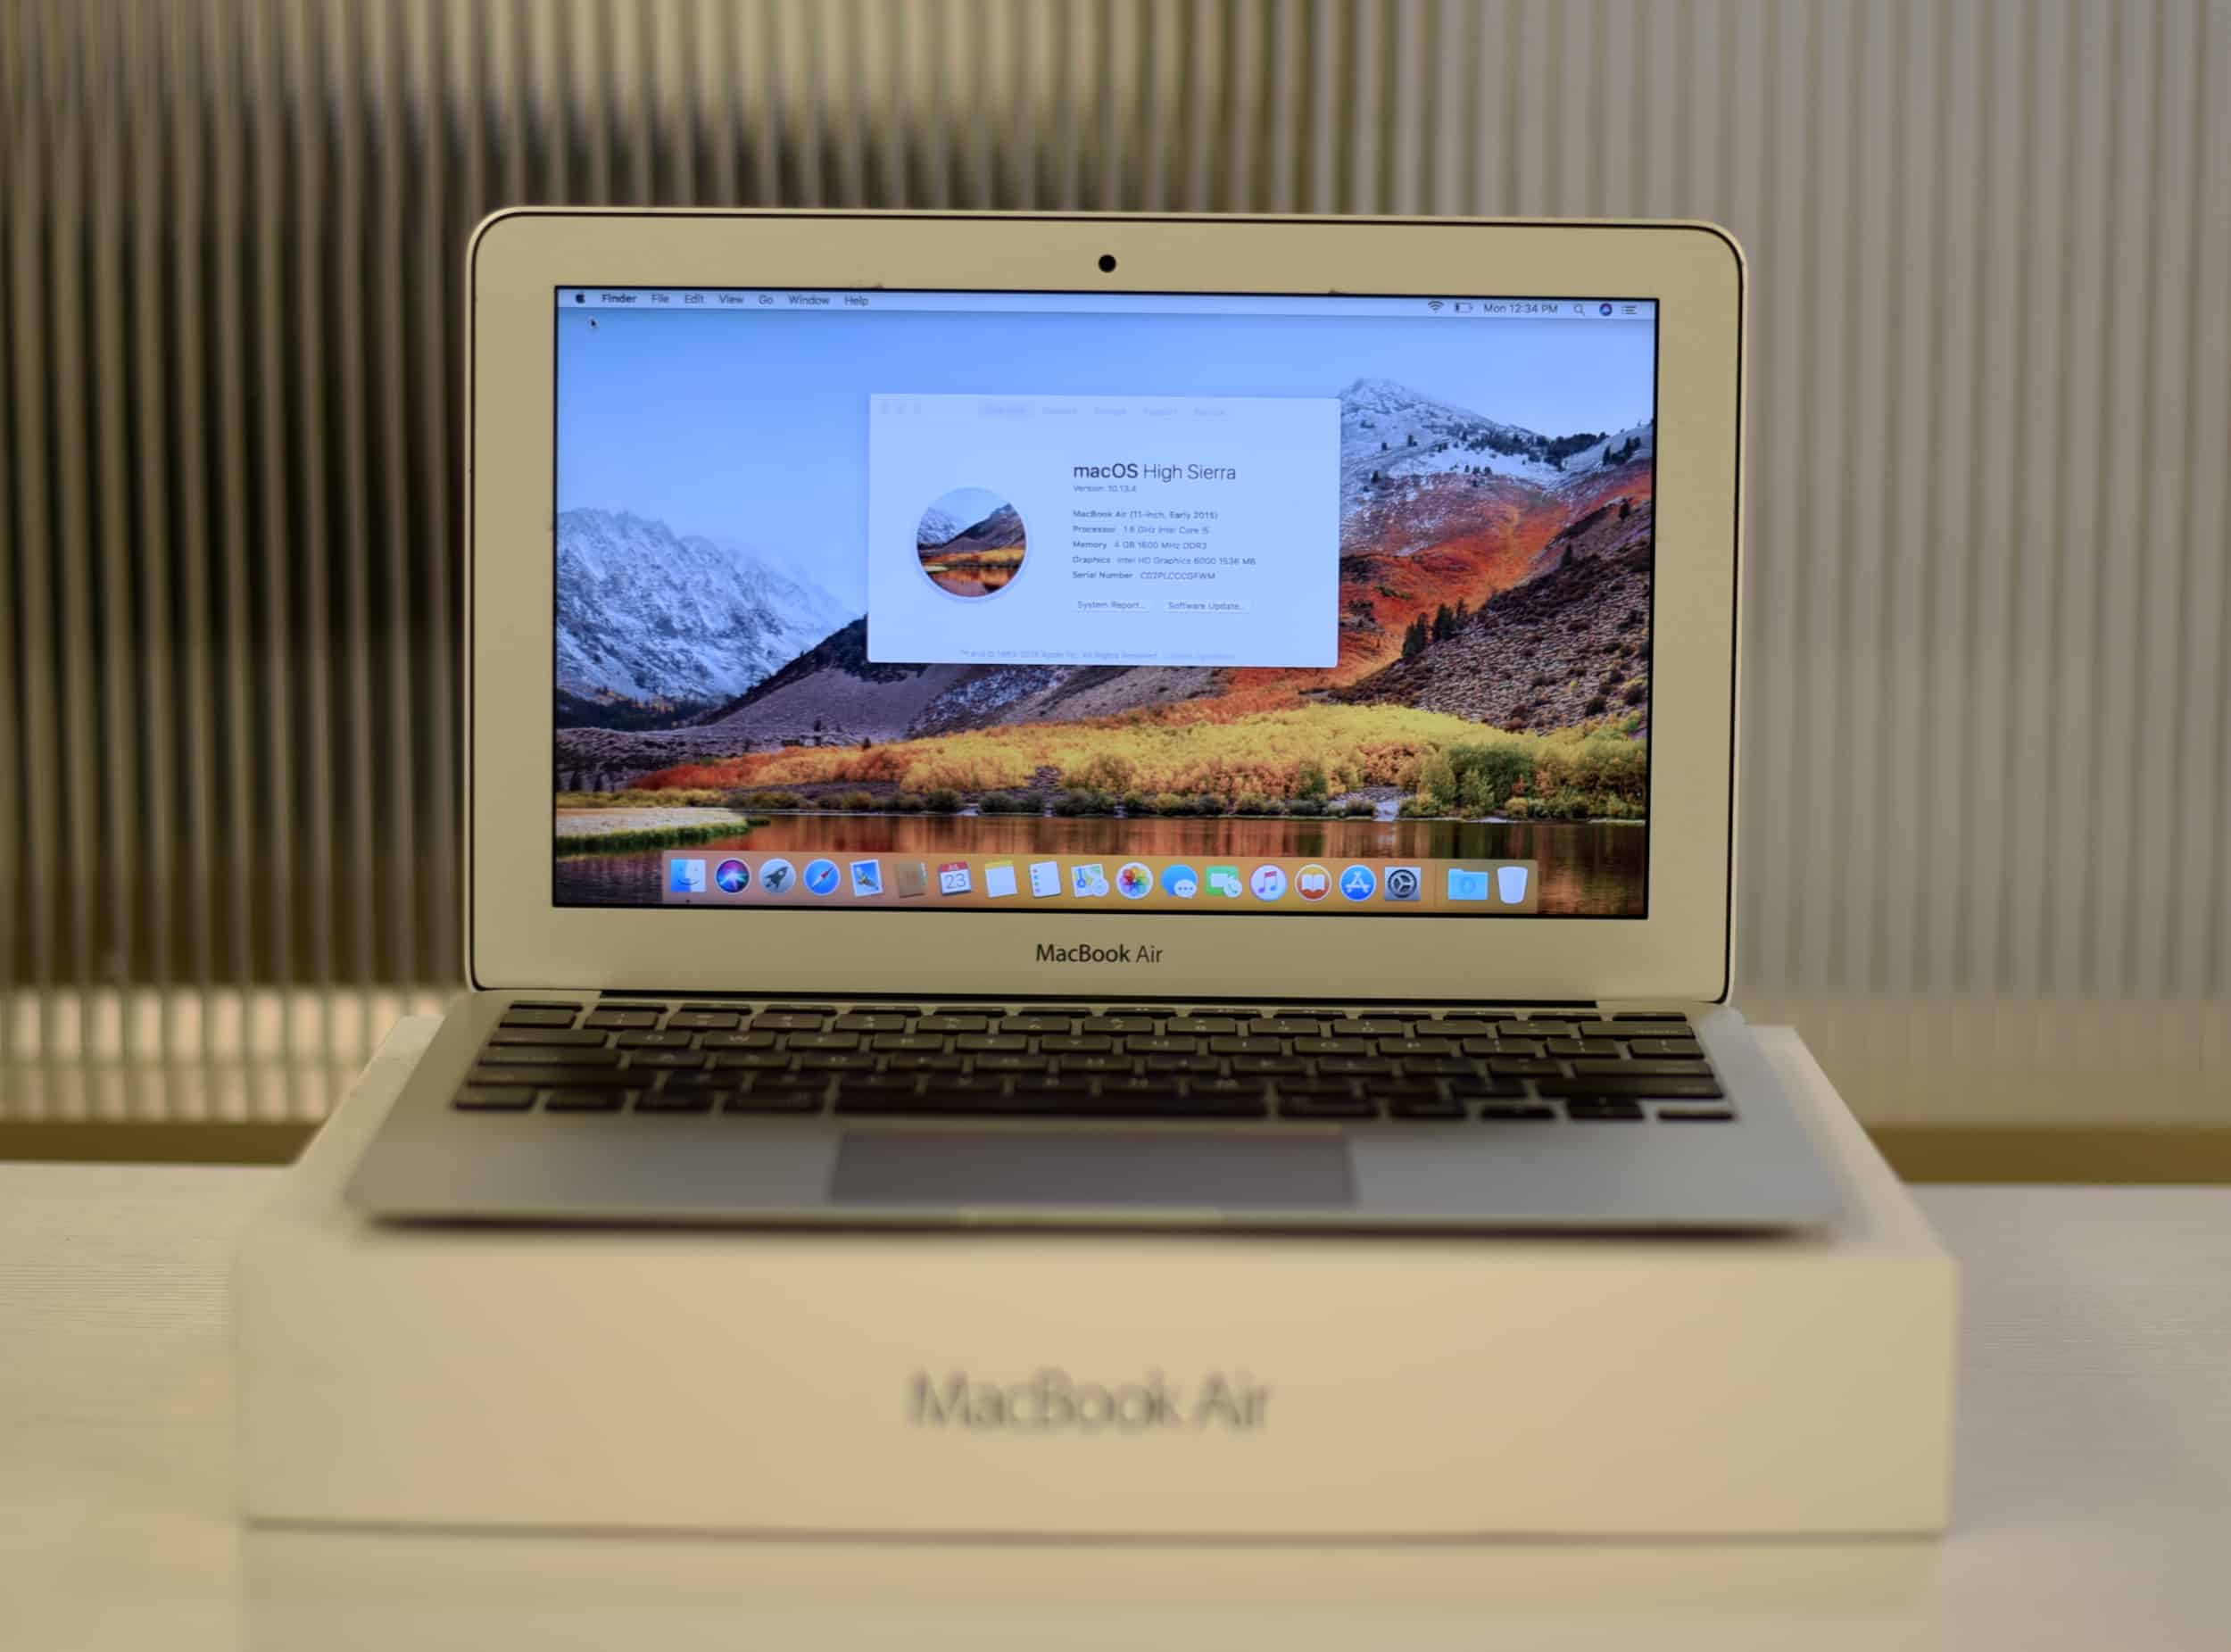 rerun MacBook Air